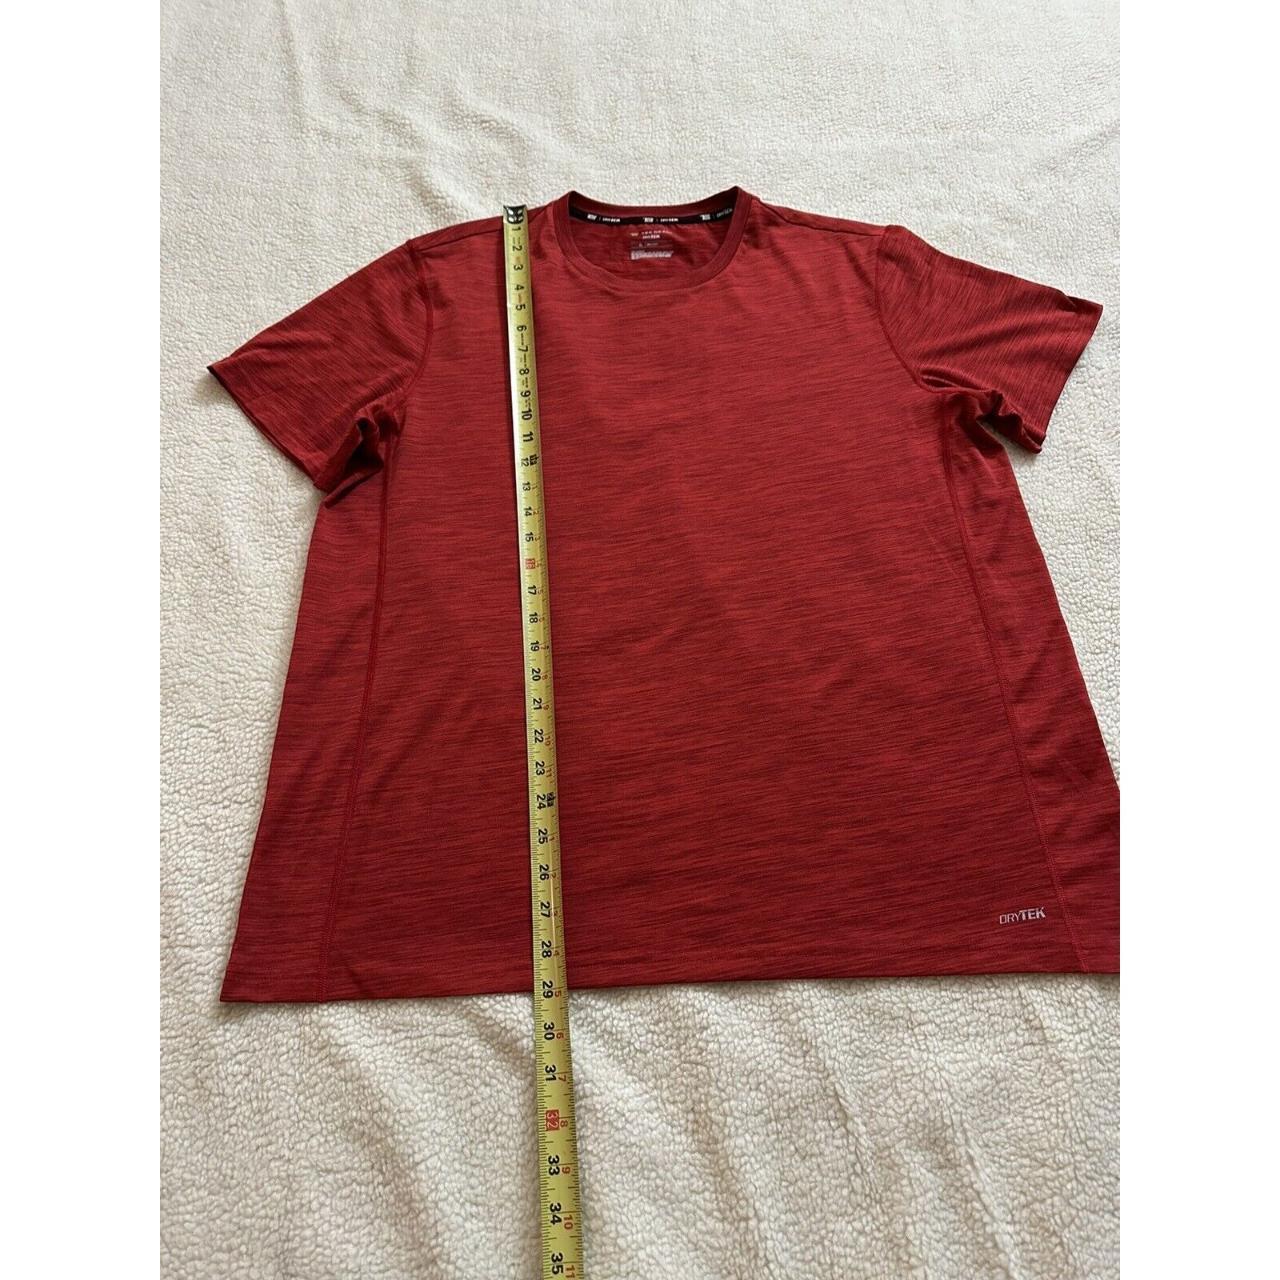 Tek Gear Shirt Mens XL Red Short Sleeve Dry Tek - Depop